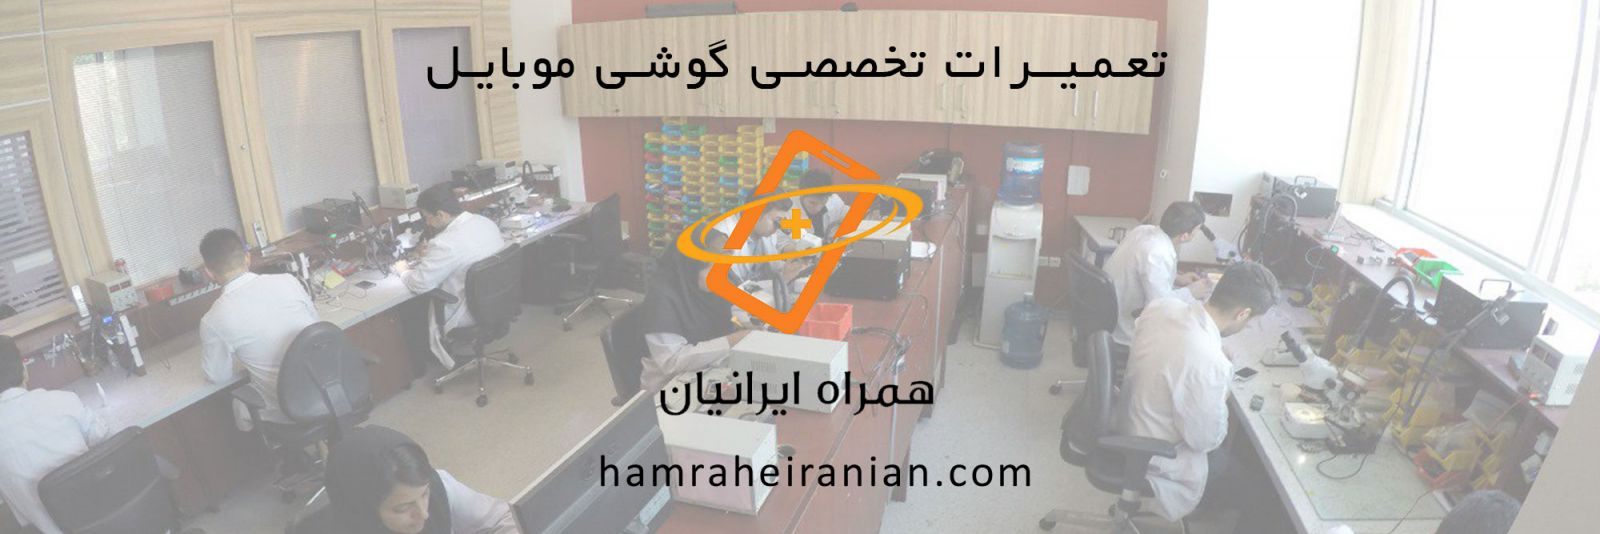 همراه ایرانیان، مرکز تخصصی تعمیر موبایل و تبلت